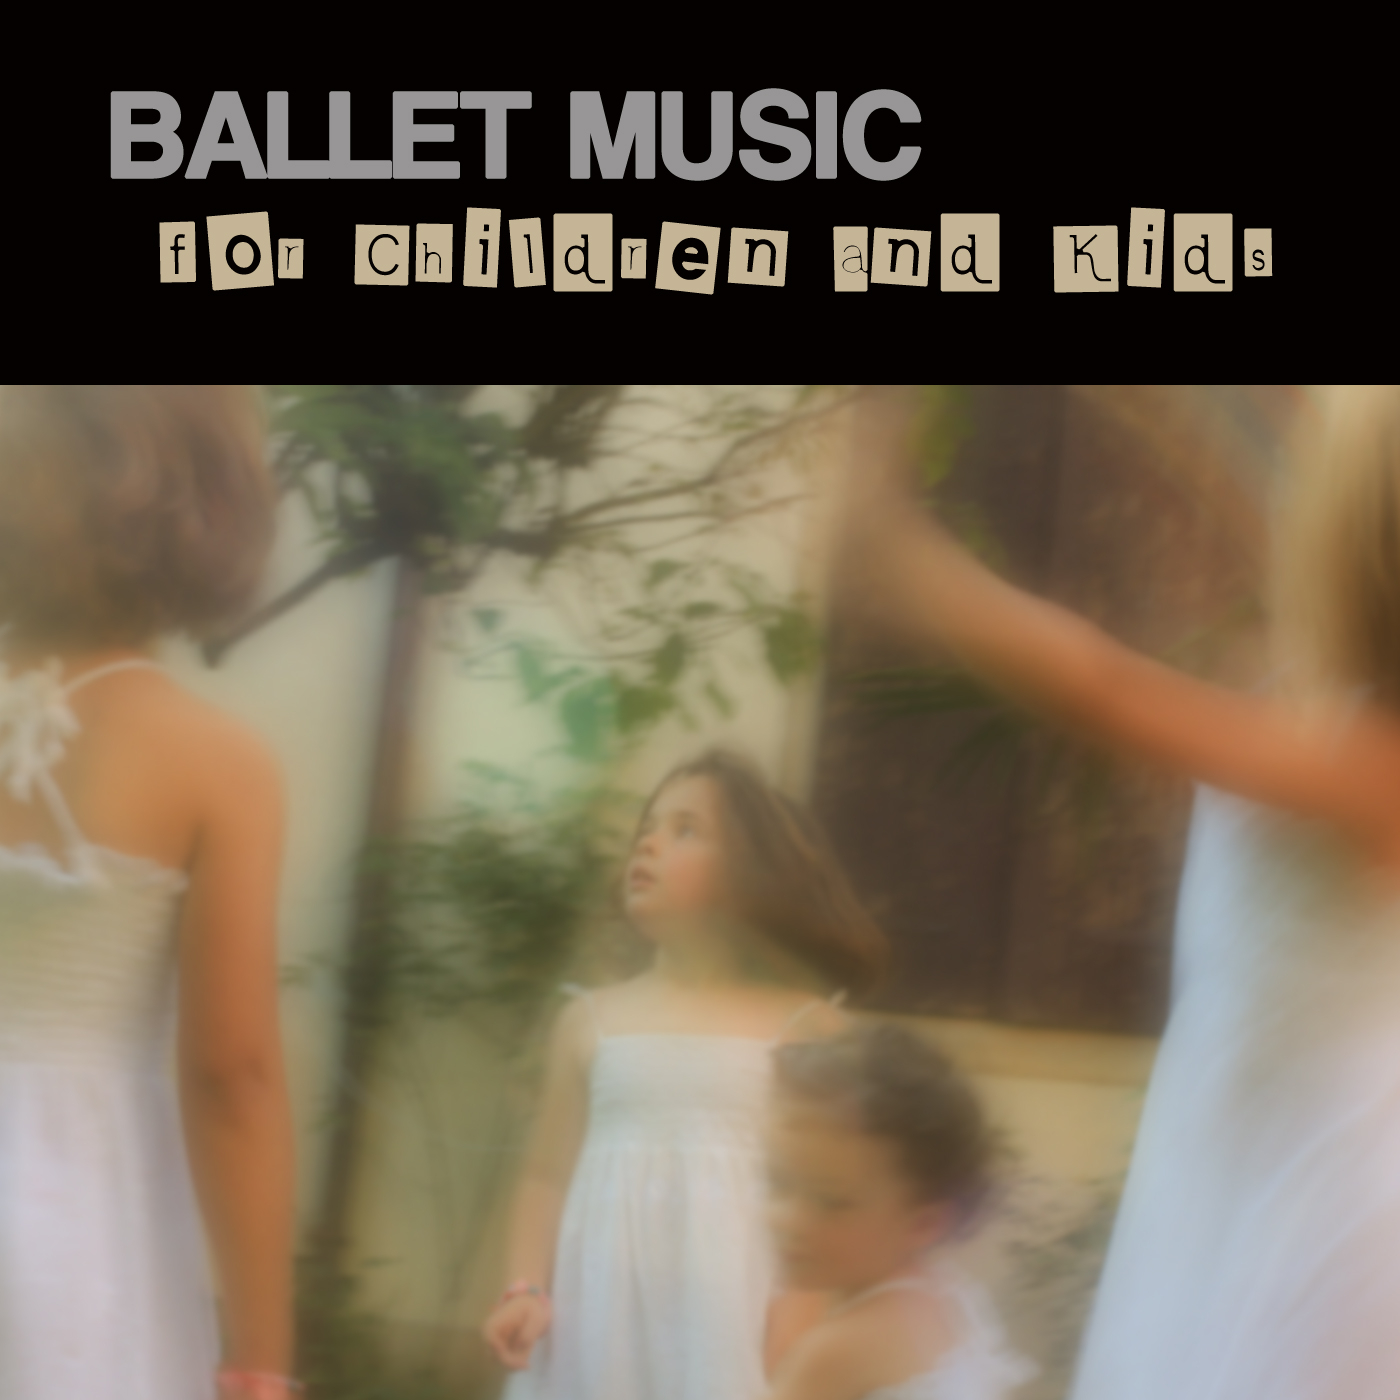 The Dance School - Children's Ballet and Dance